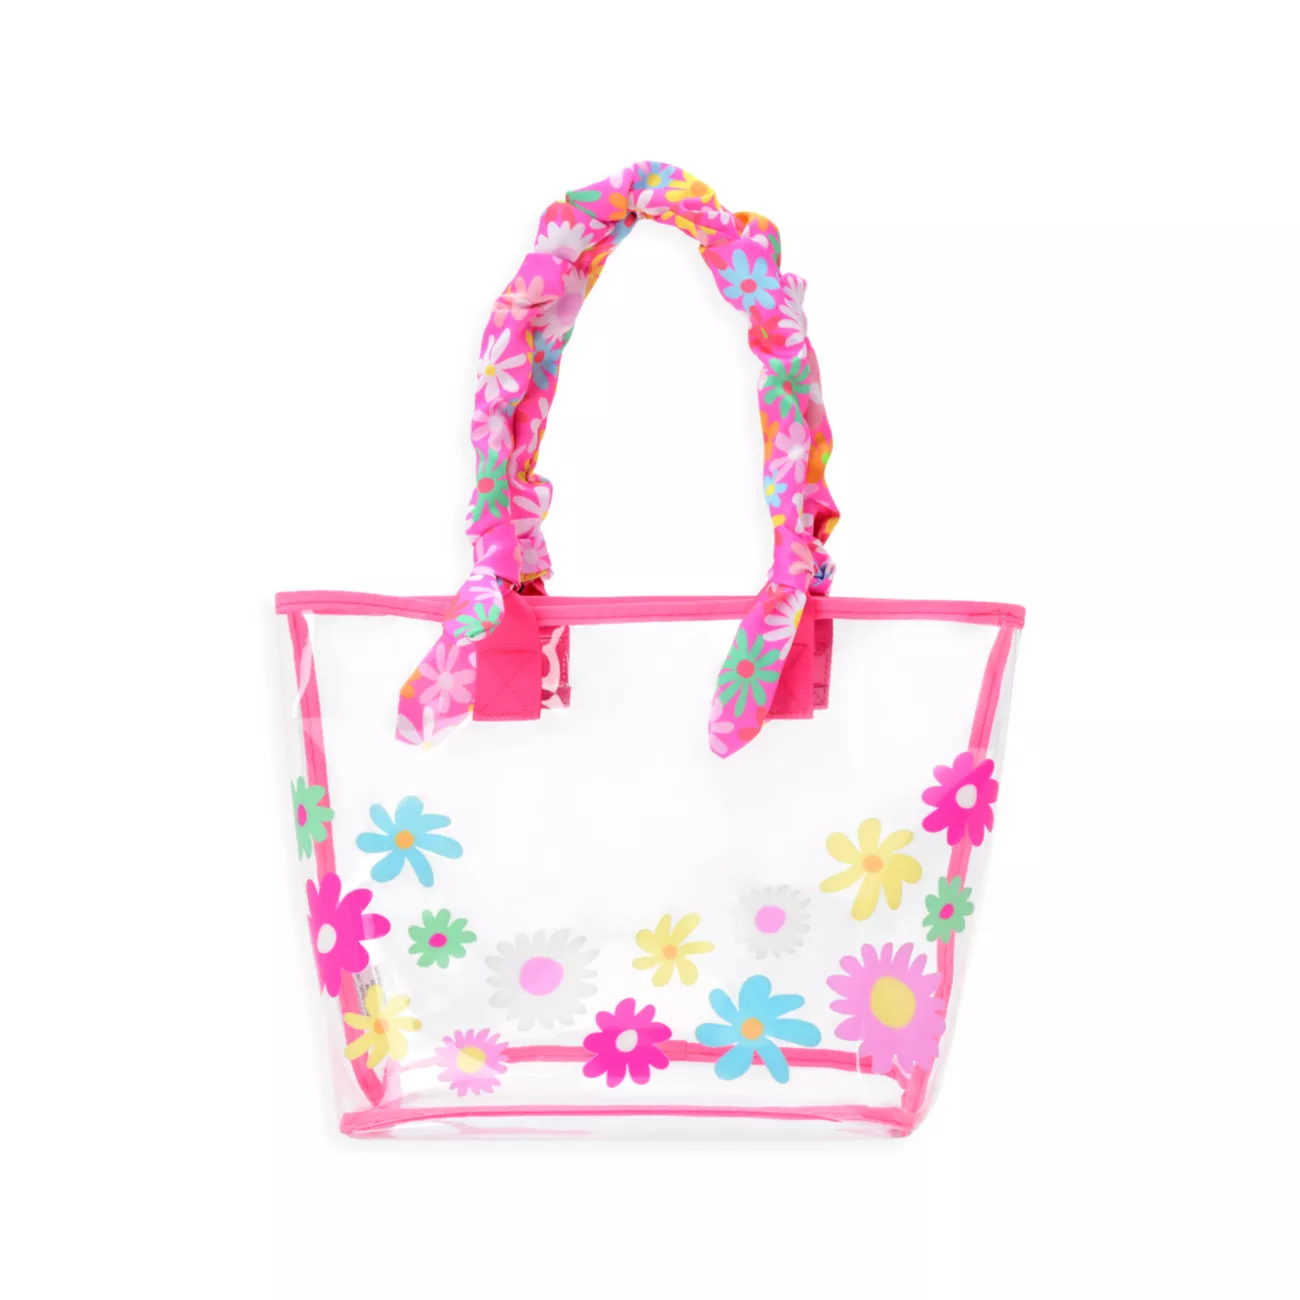 Прозрачная сумка-тоут с пышными цветами для девочек, набор из 2 предметов IScream